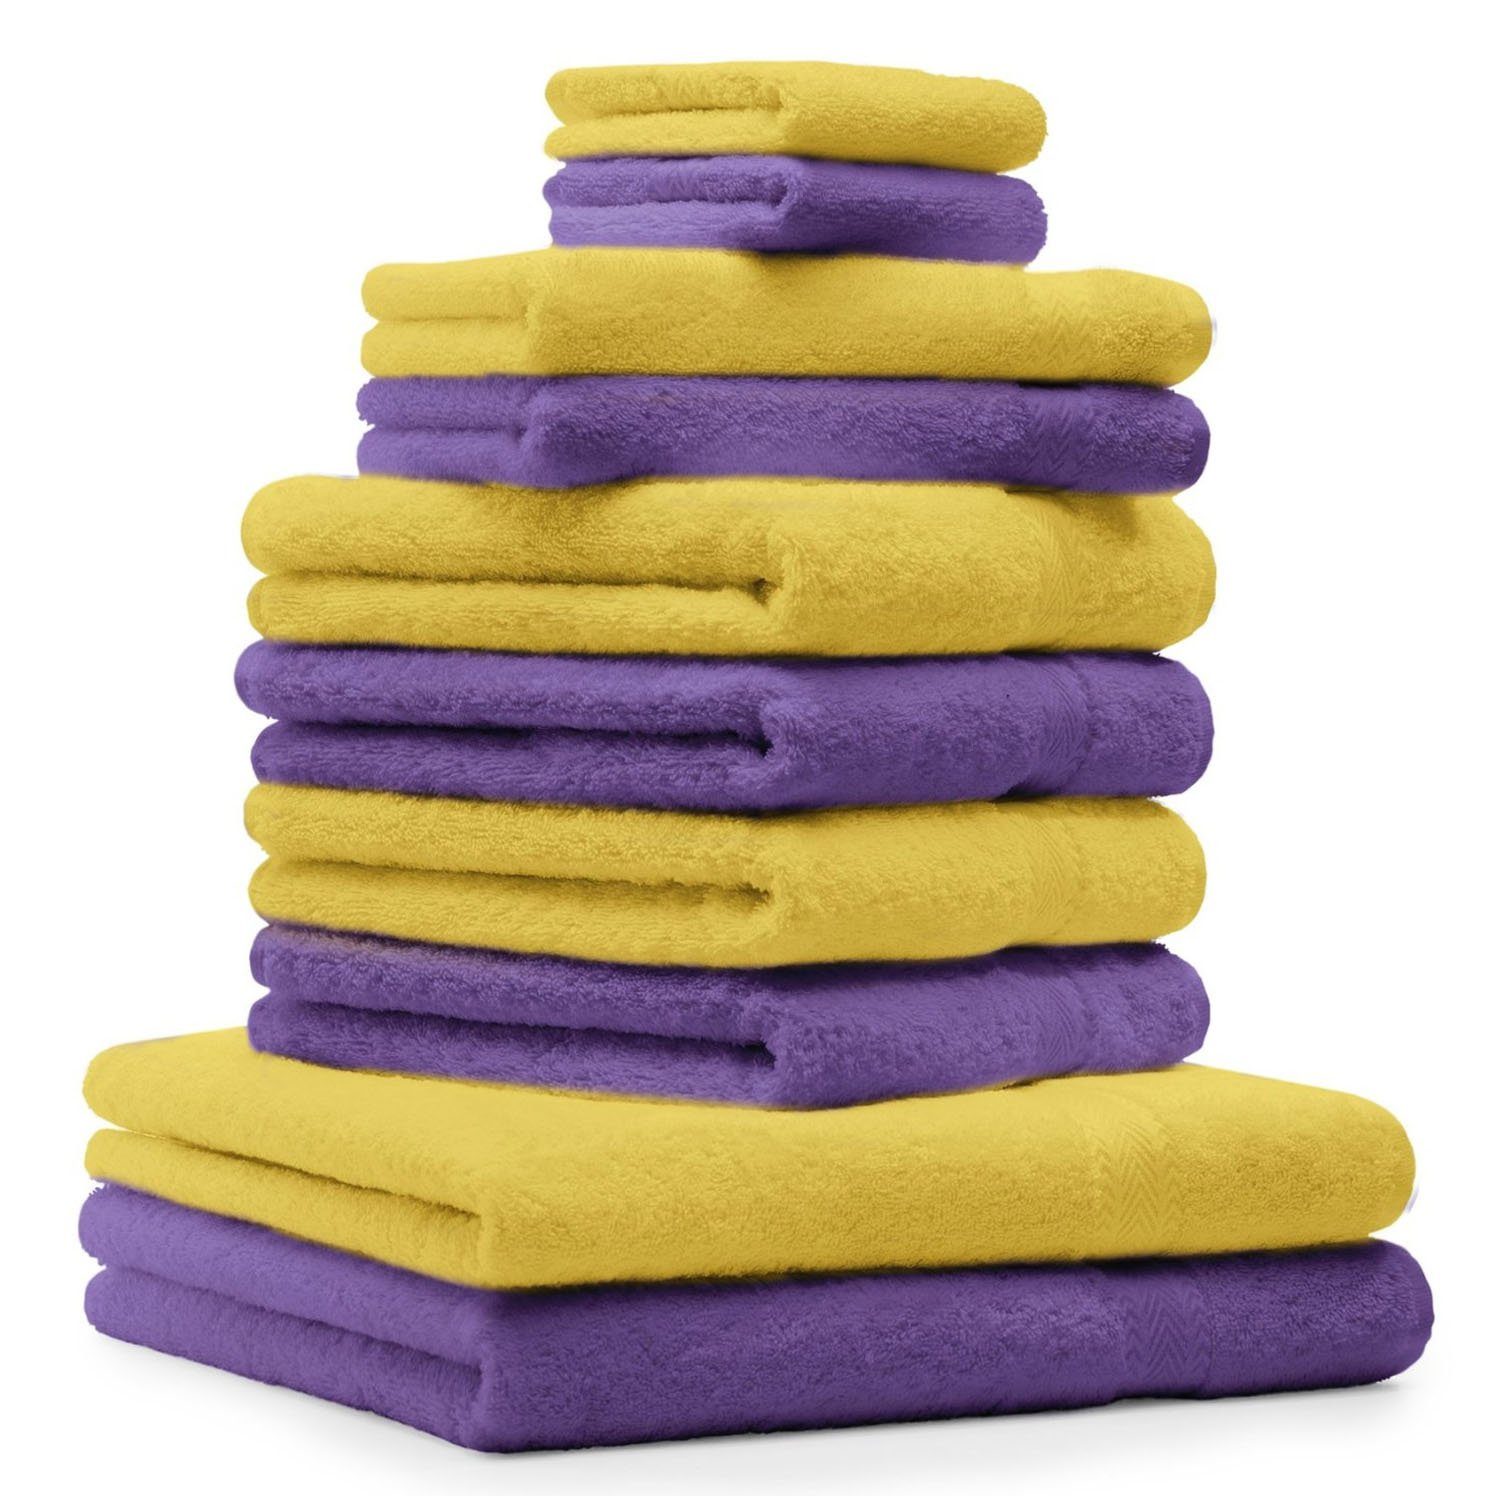 Betz Handtuch Set 10-TLG. Handtuch-Set Classic Farbe lila und gelb, 100% Baumwolle